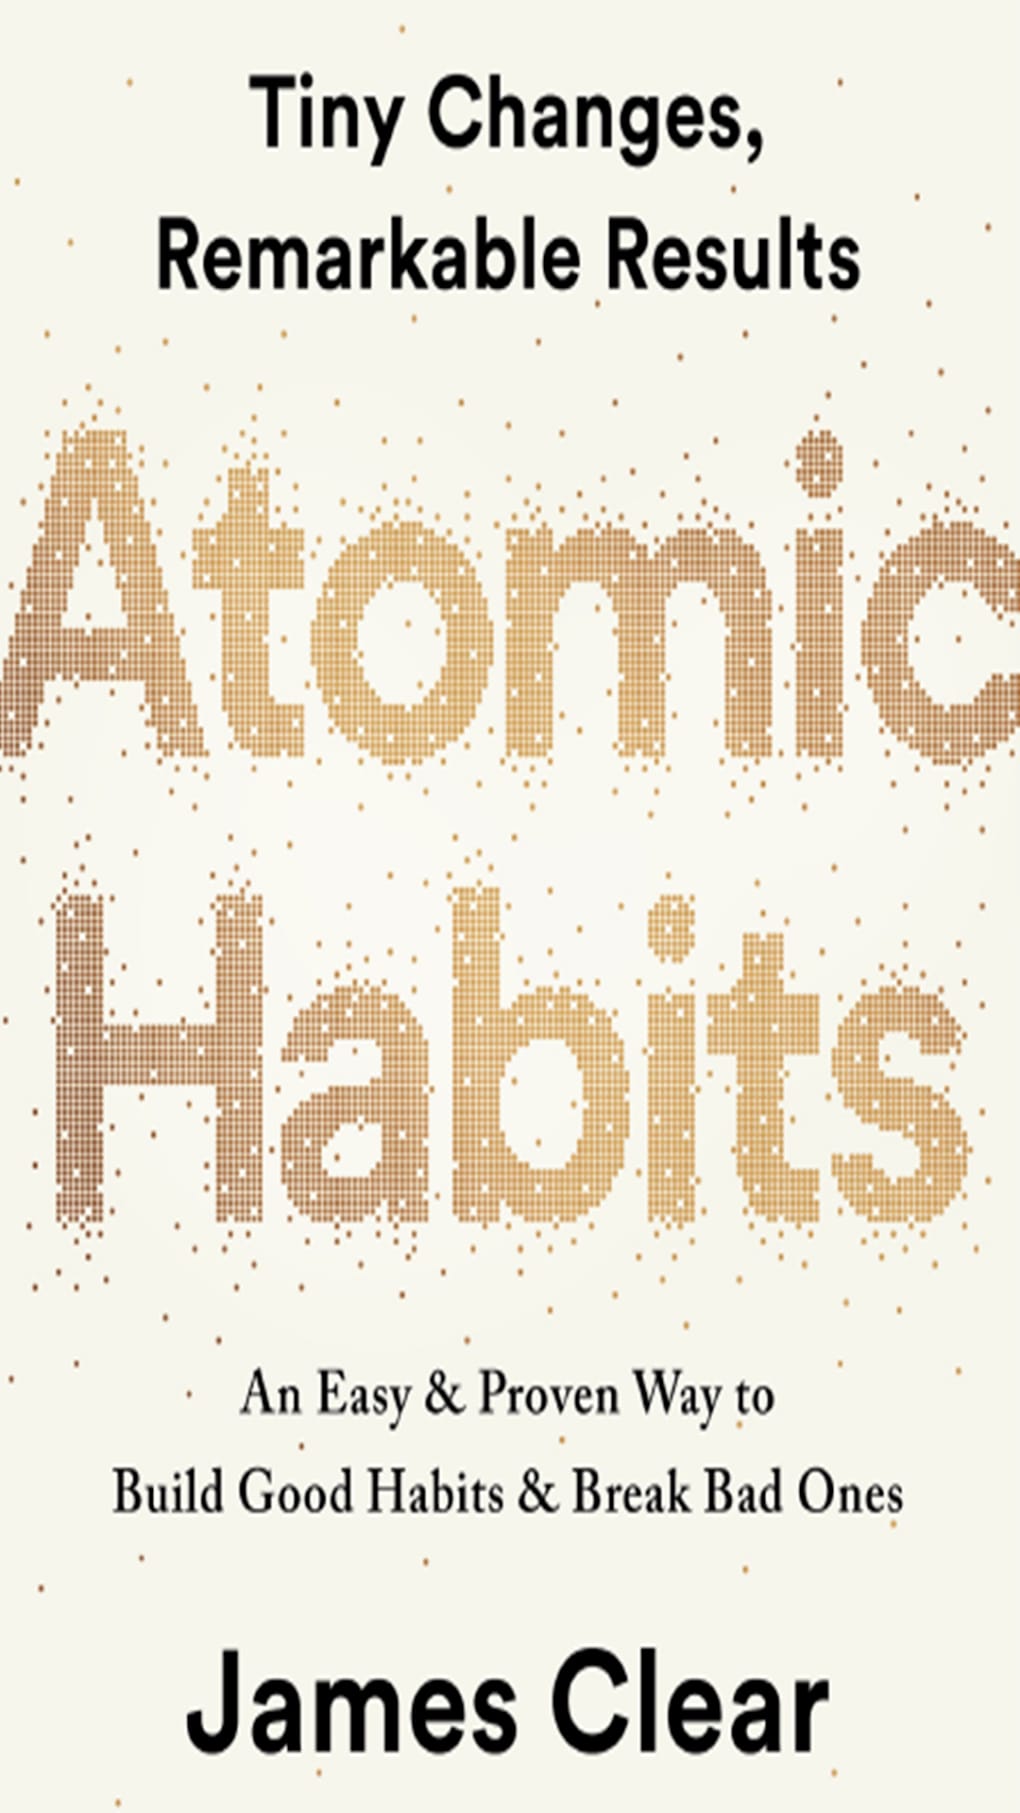 Atomic Habits downloading